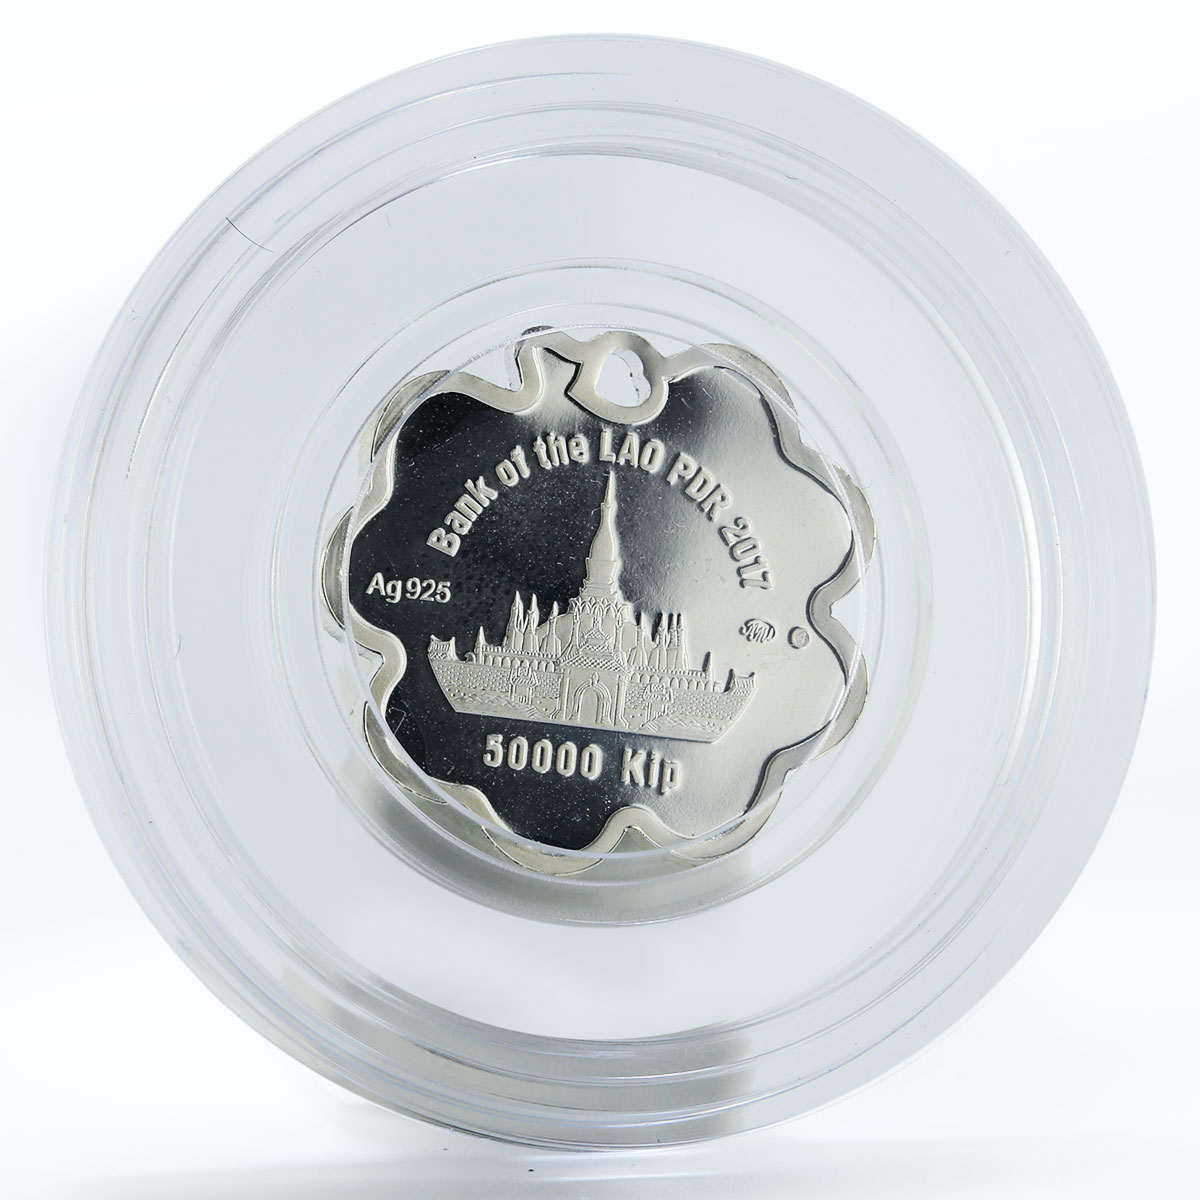 Laos 50000 kip Clover luck colored silver coin 2017